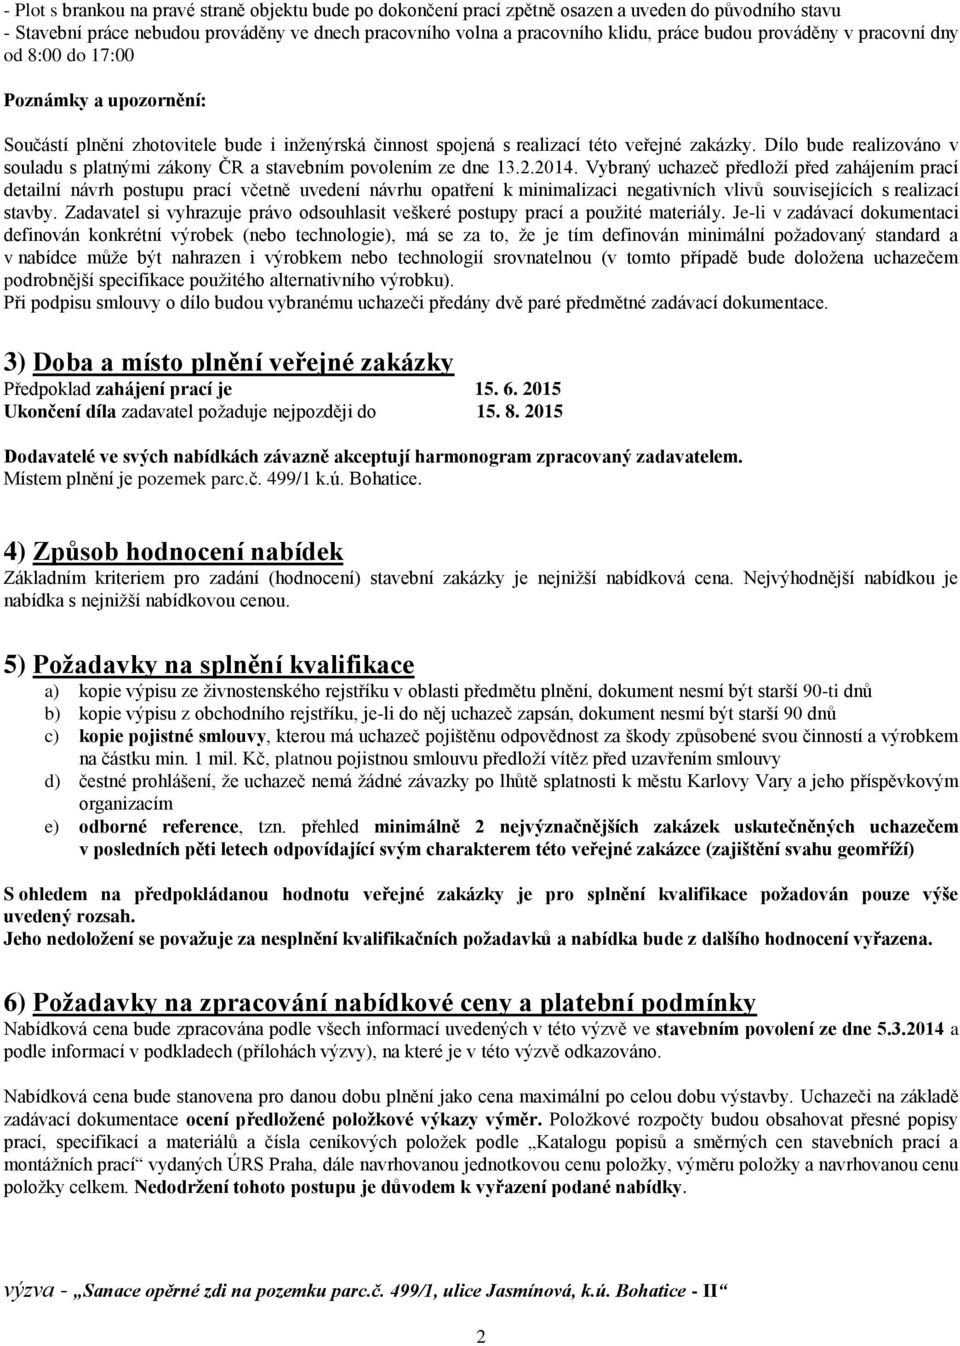 Dílo bude realizováno v souladu s platnými zákony ČR a stavebním povolením ze dne 13.2.2014.